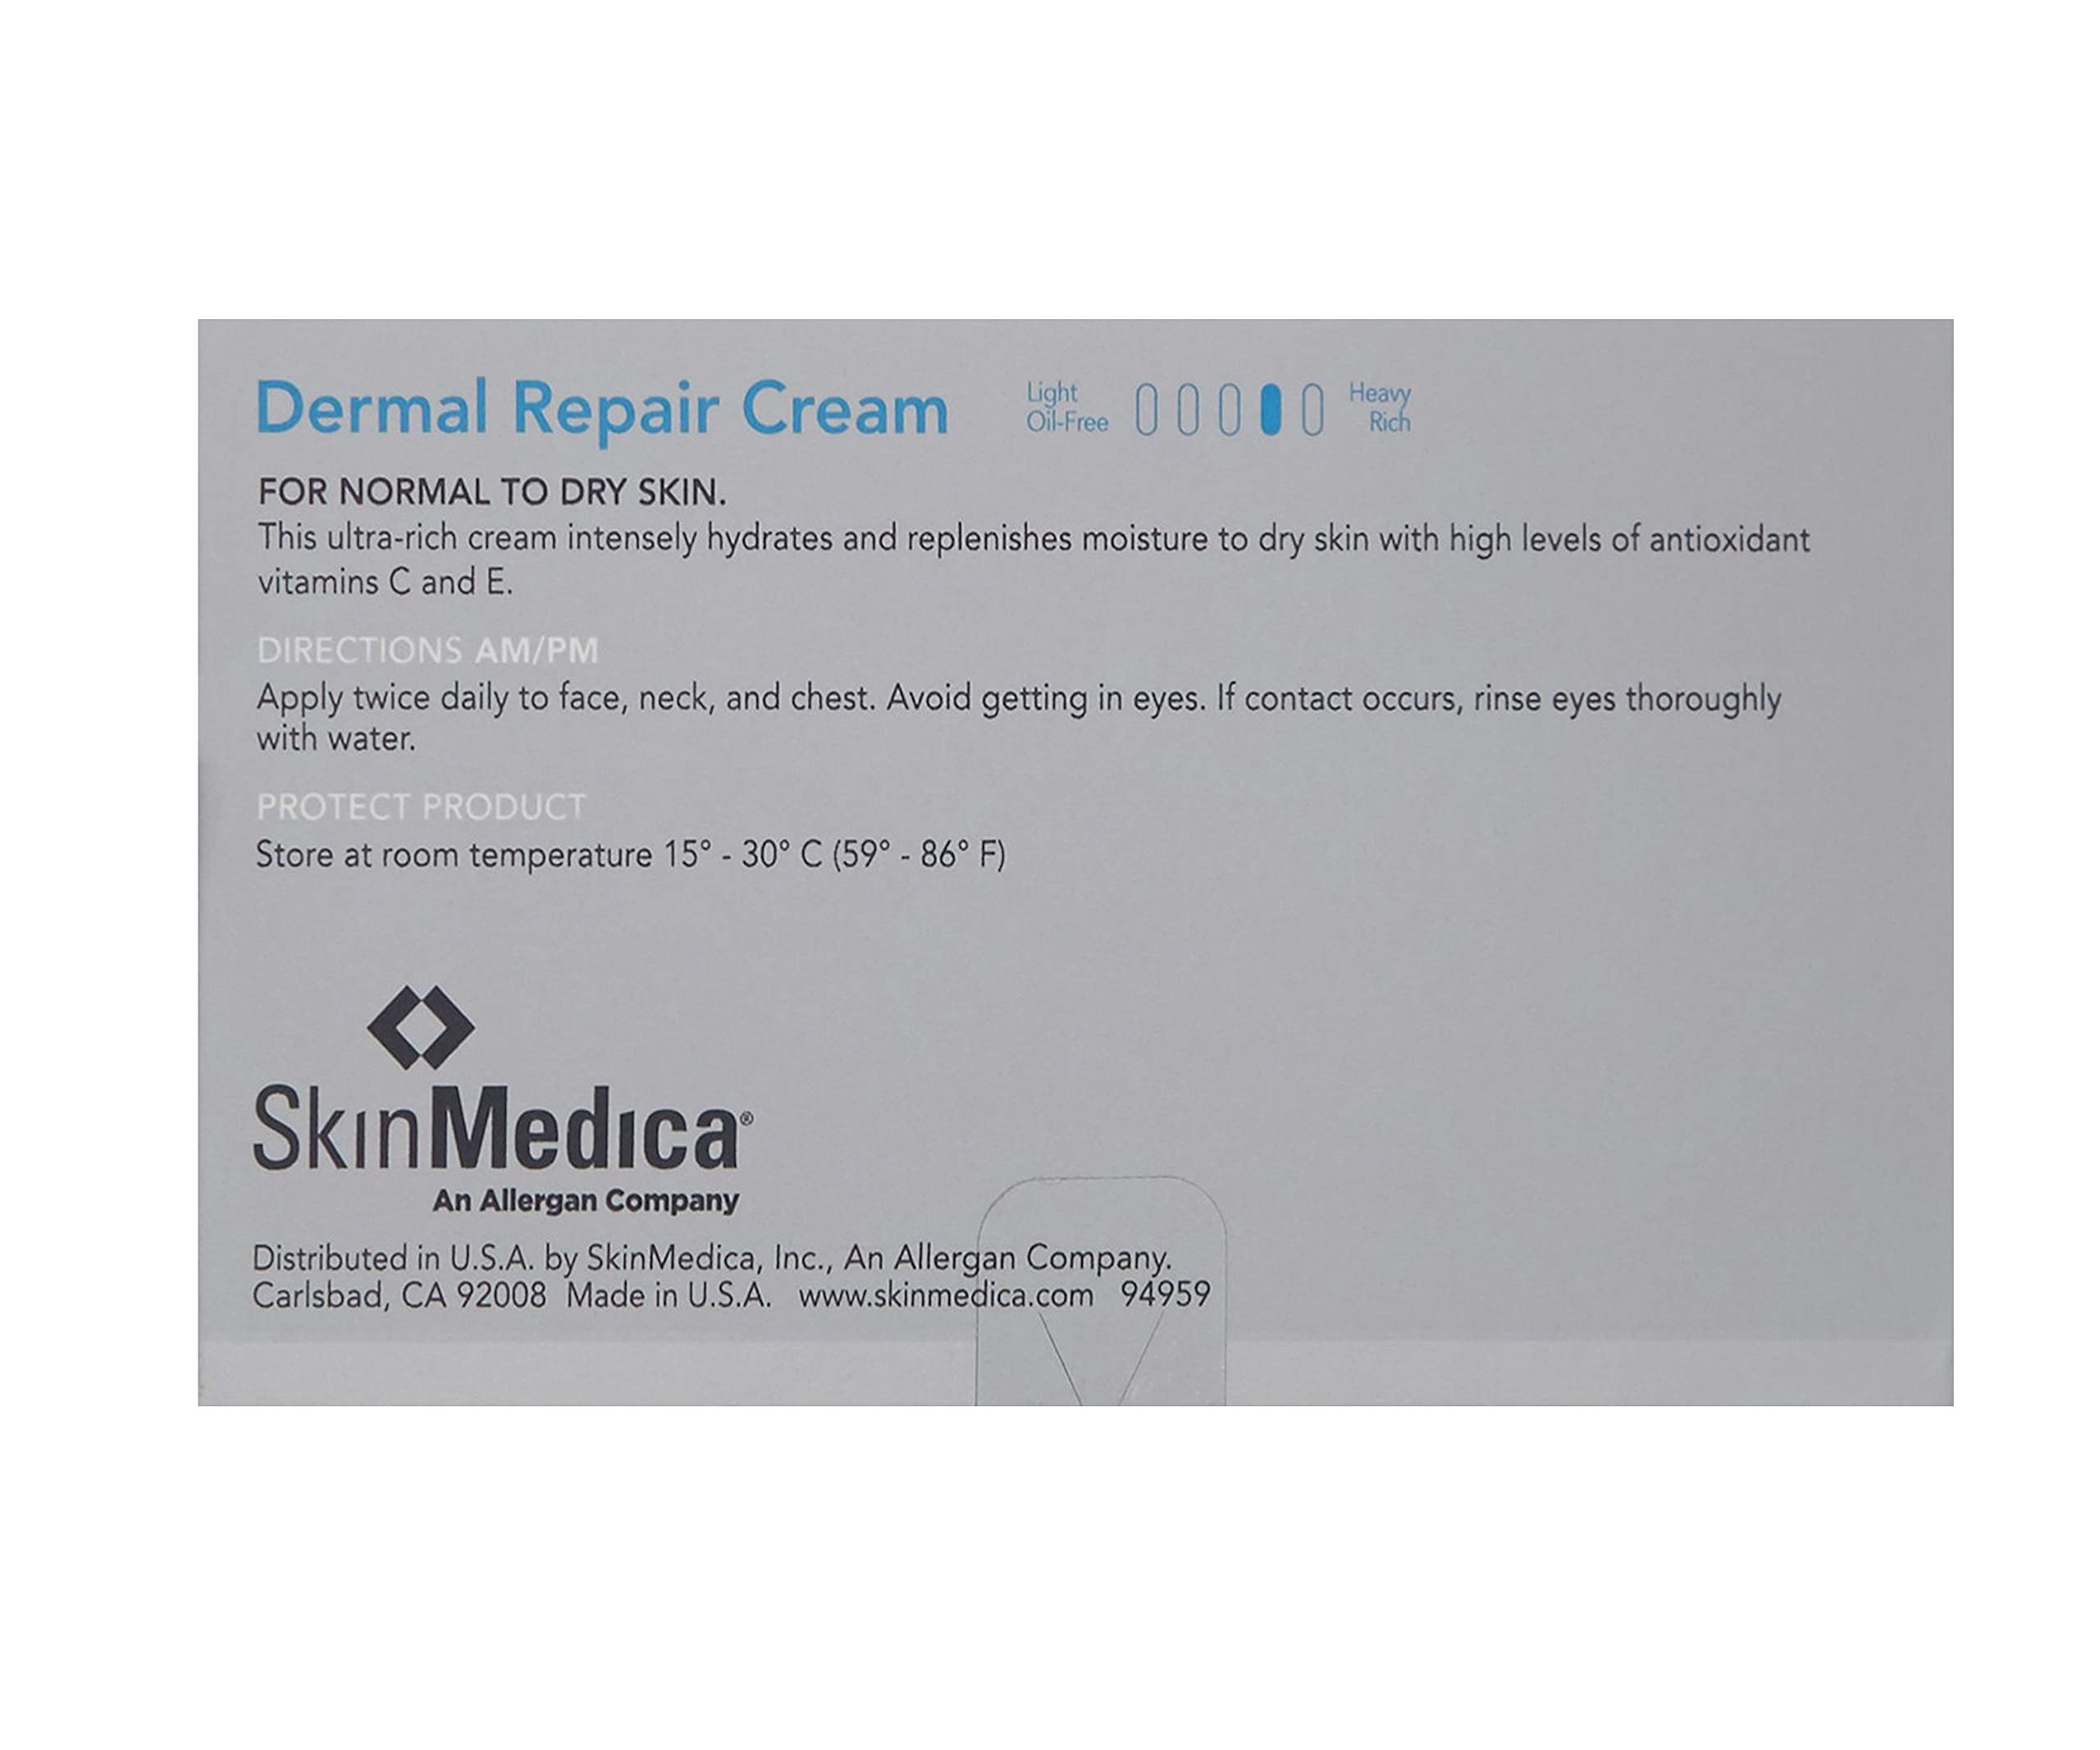 SkinMedica Dermal Repair Cream, 1.7 Oz